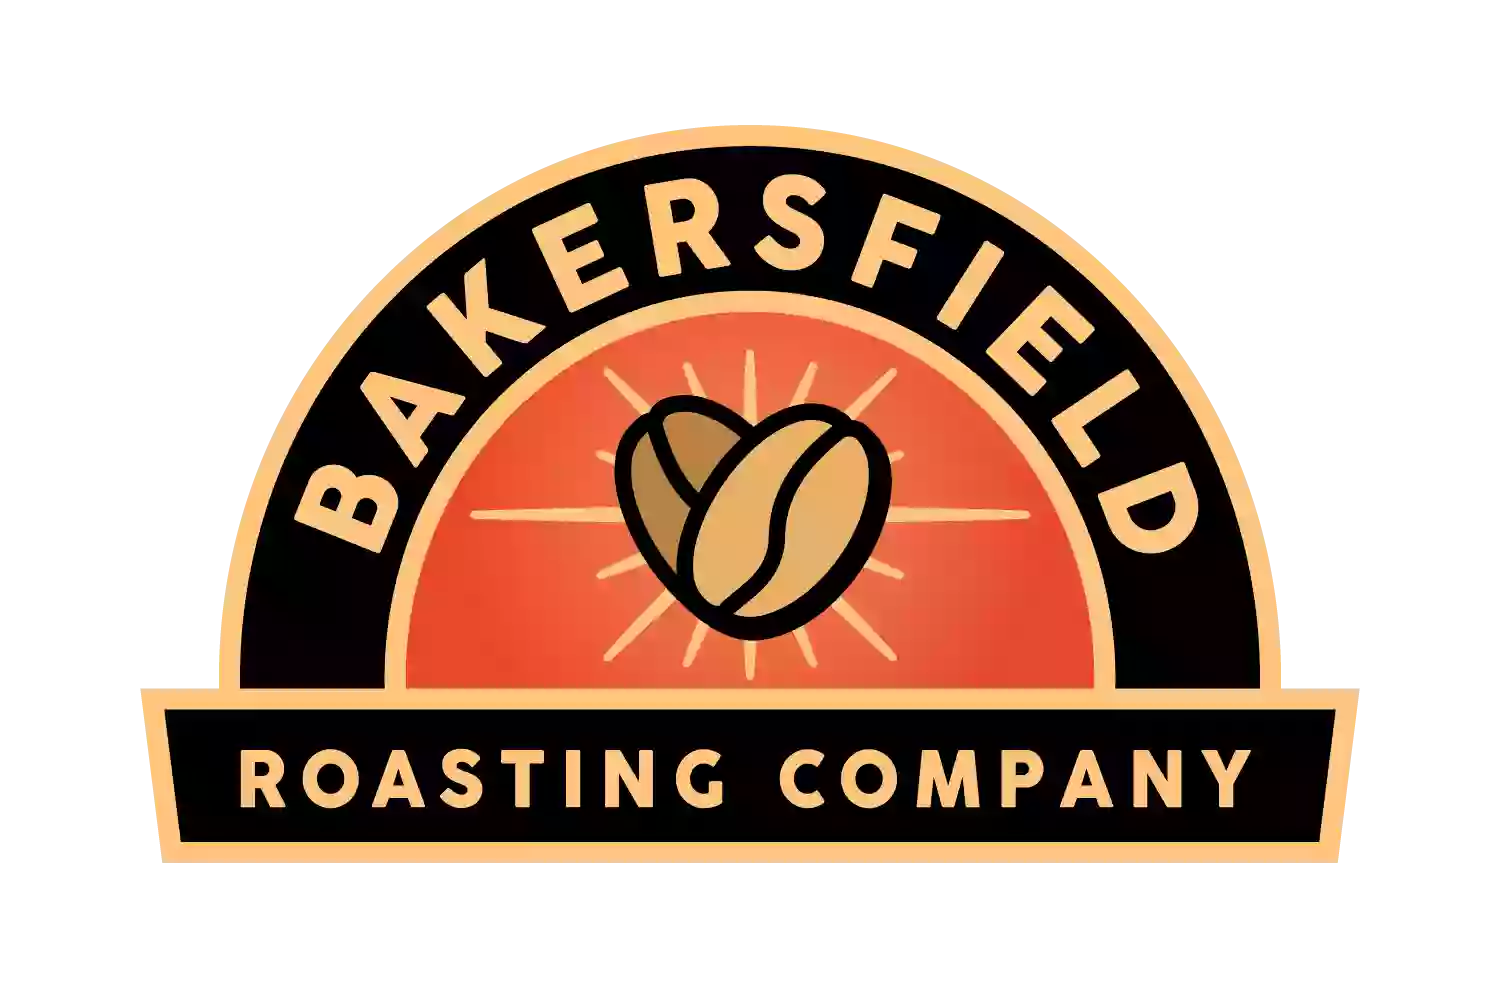 Bakersfield Roasting Company